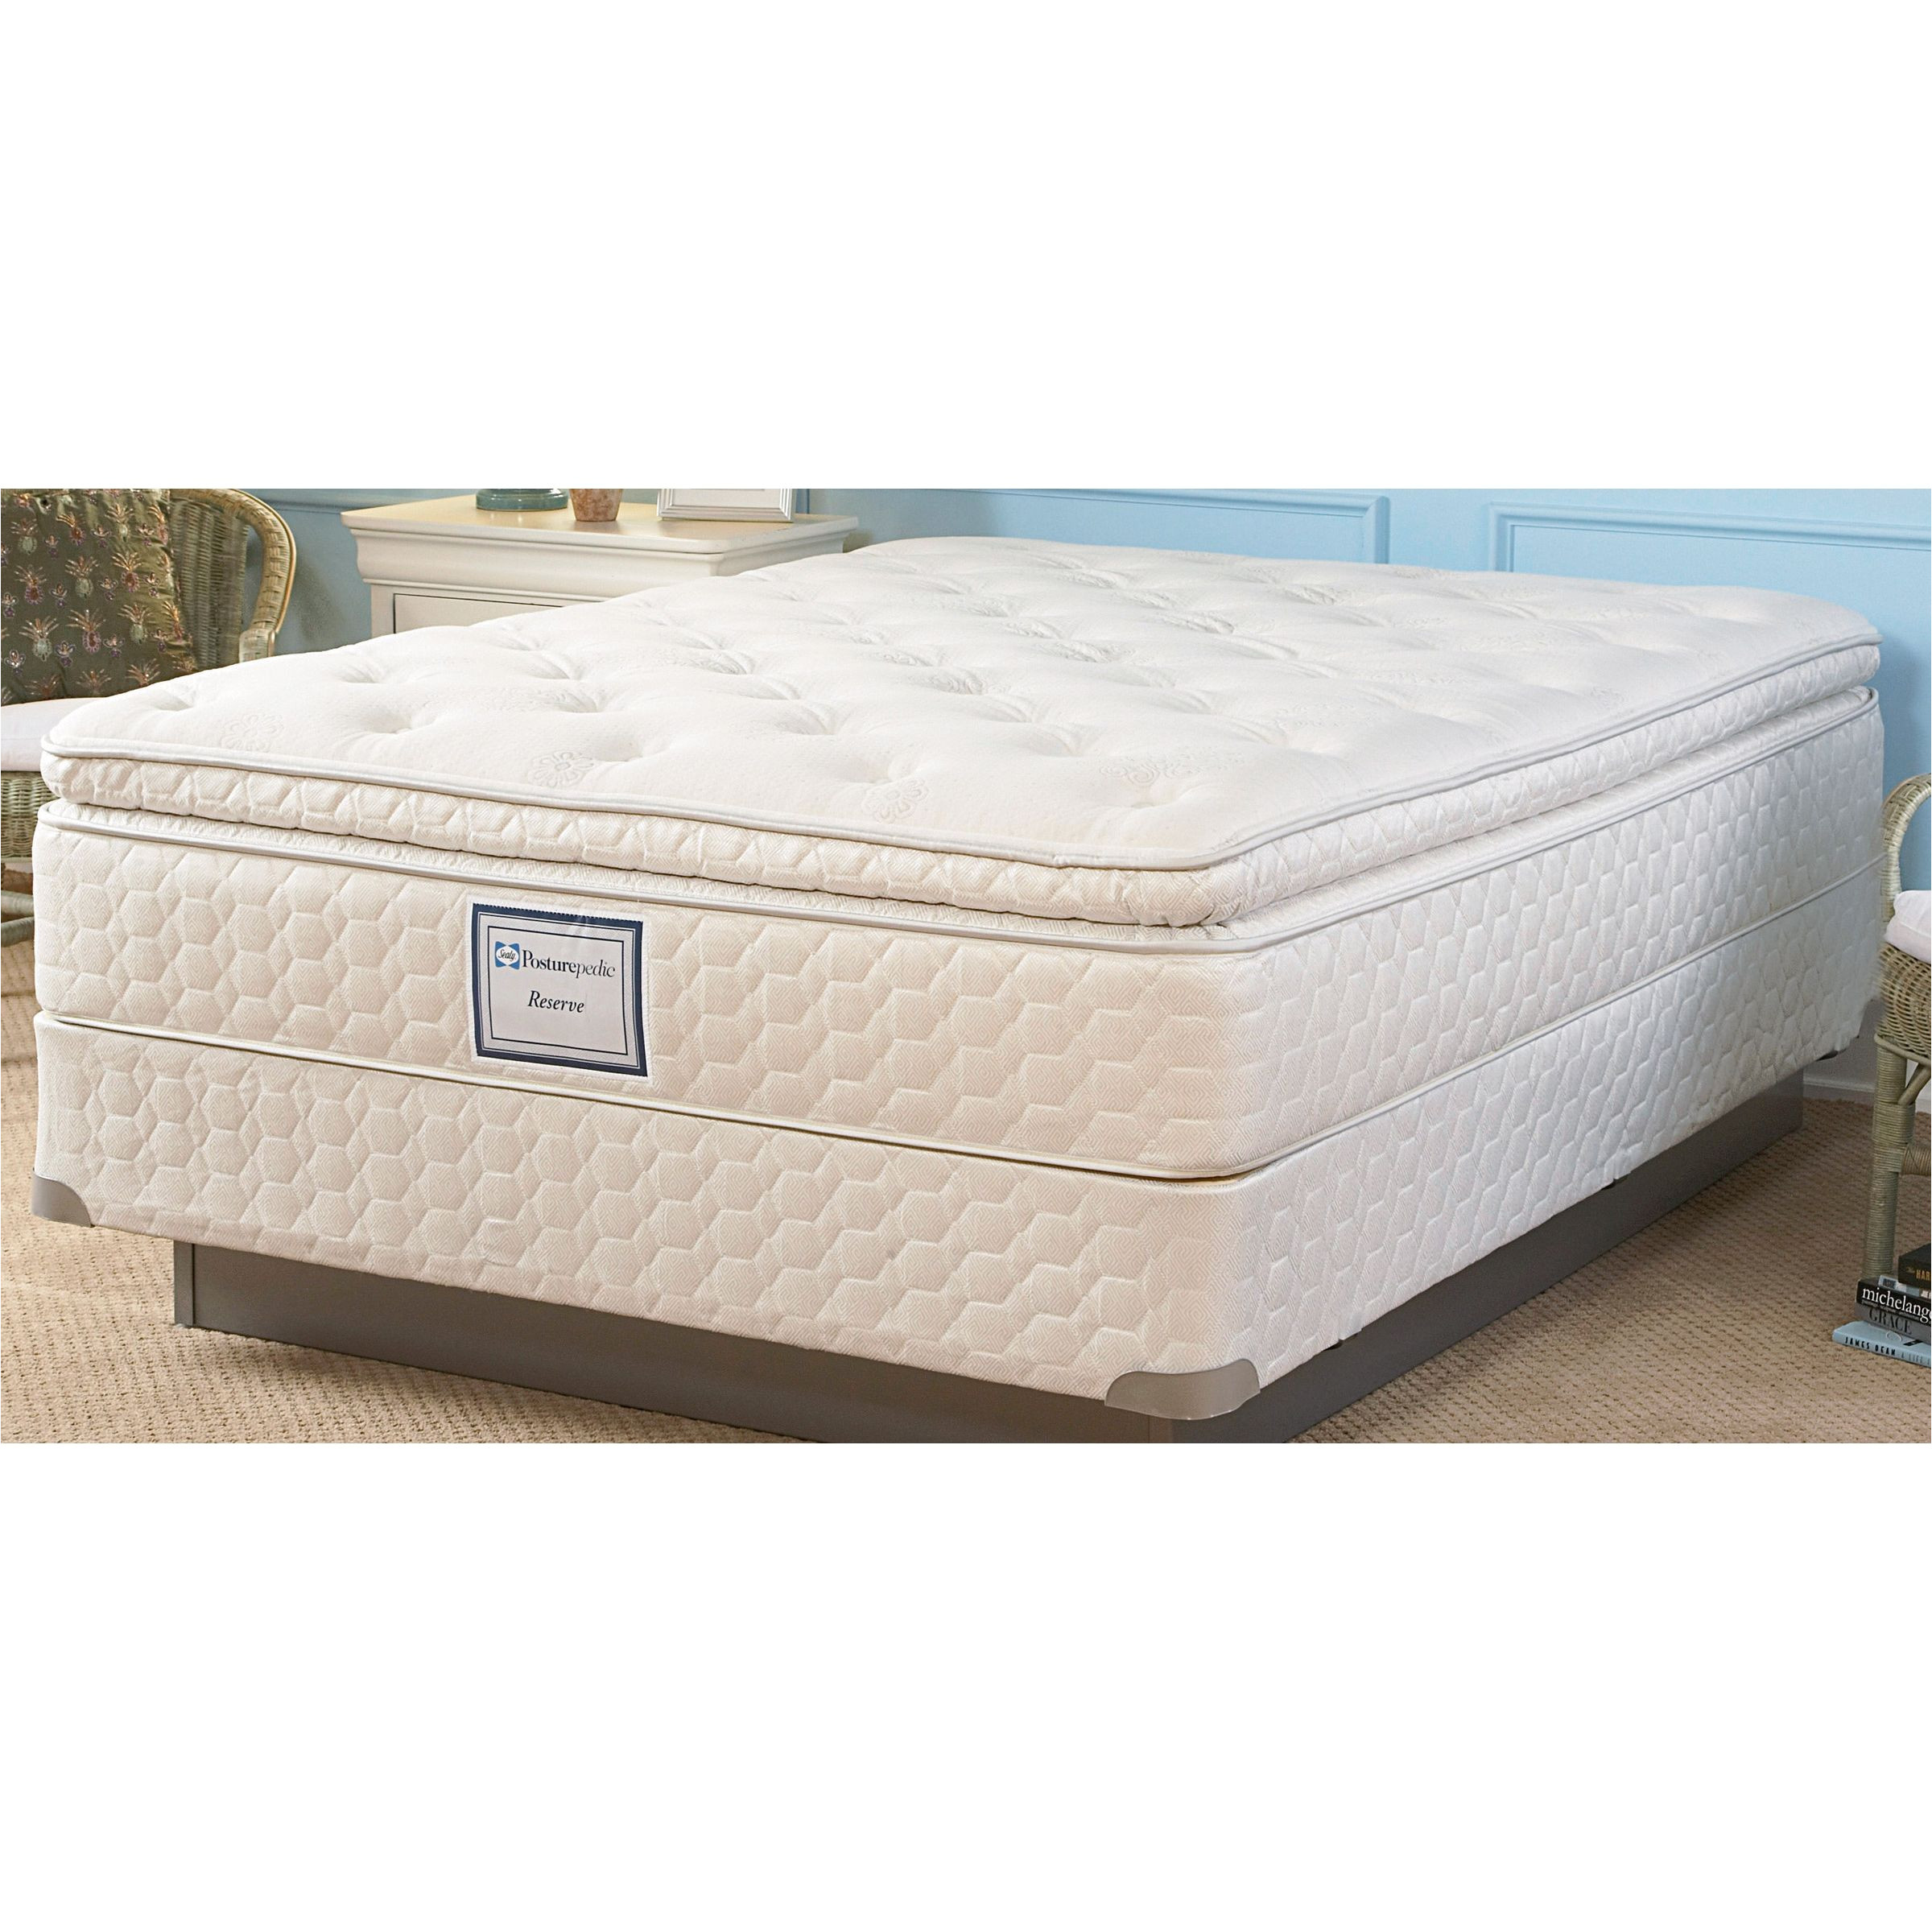 Sears mattress